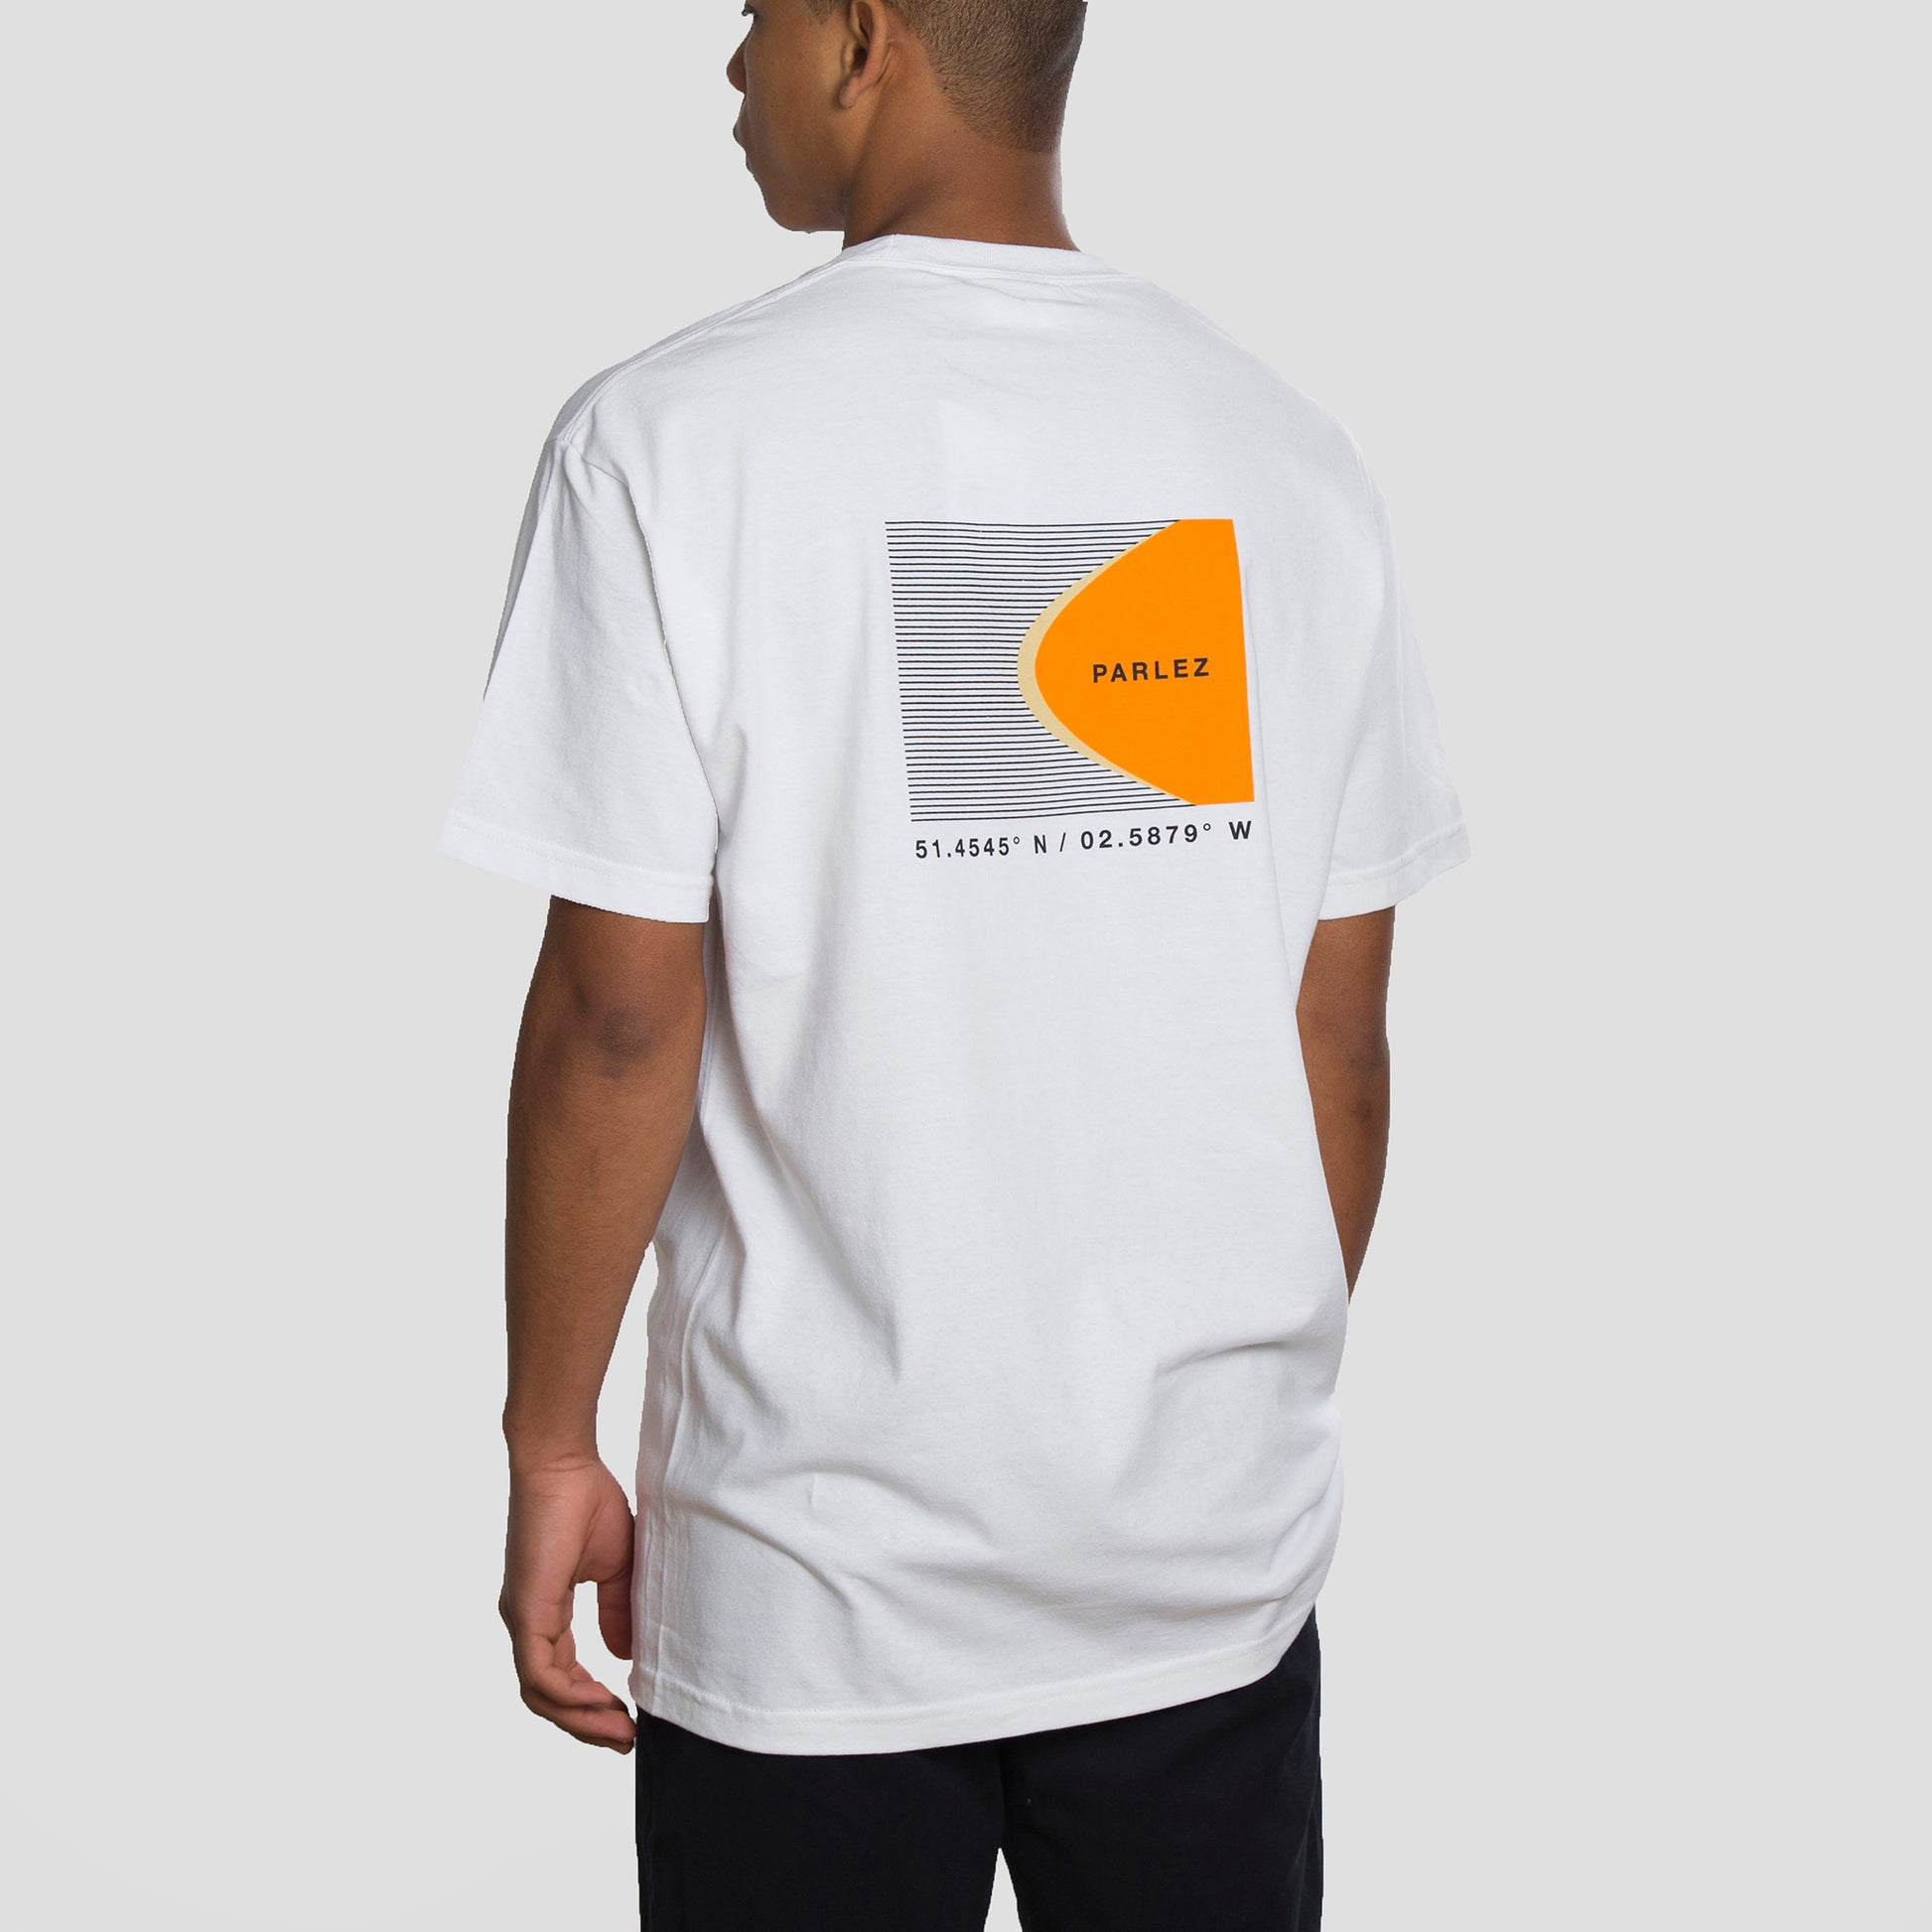 Parlez Camiseta Coastal - PARHW20860-WHT - Colección Chico